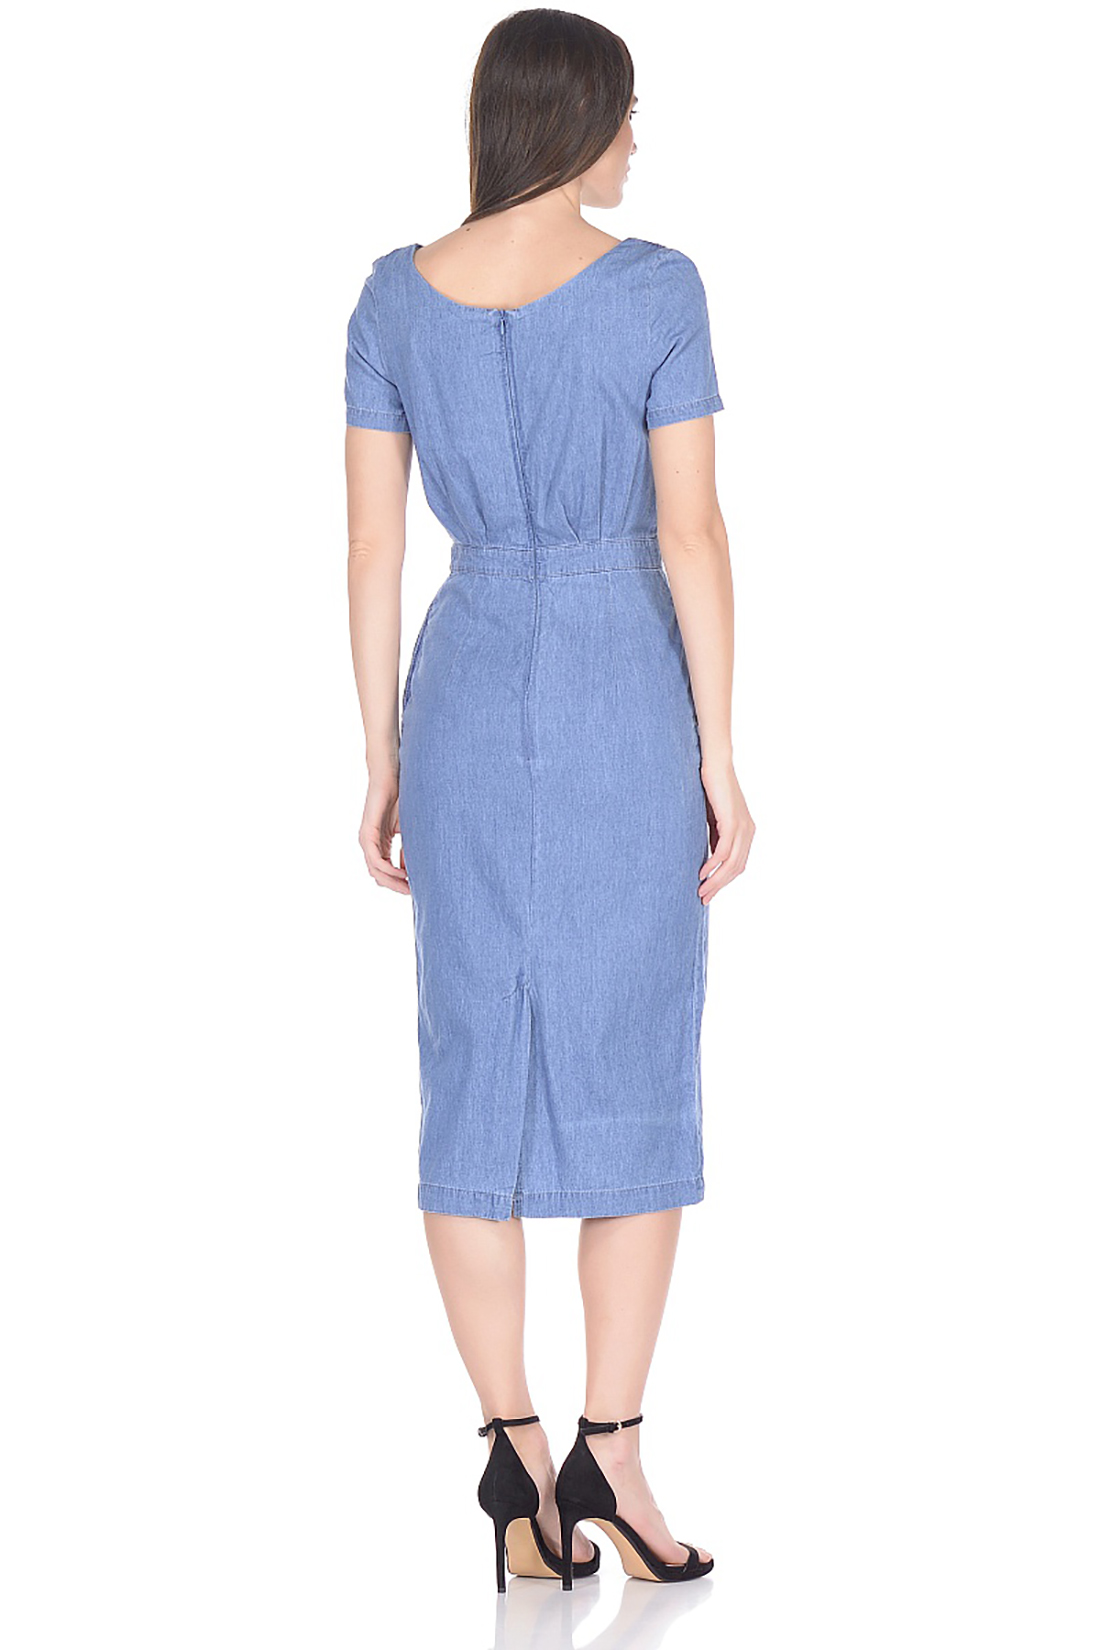 Платье-миди из денима (арт. baon B458108), размер XXL, цвет blue denim#голубой Платье-миди из денима (арт. baon B458108) - фото 2